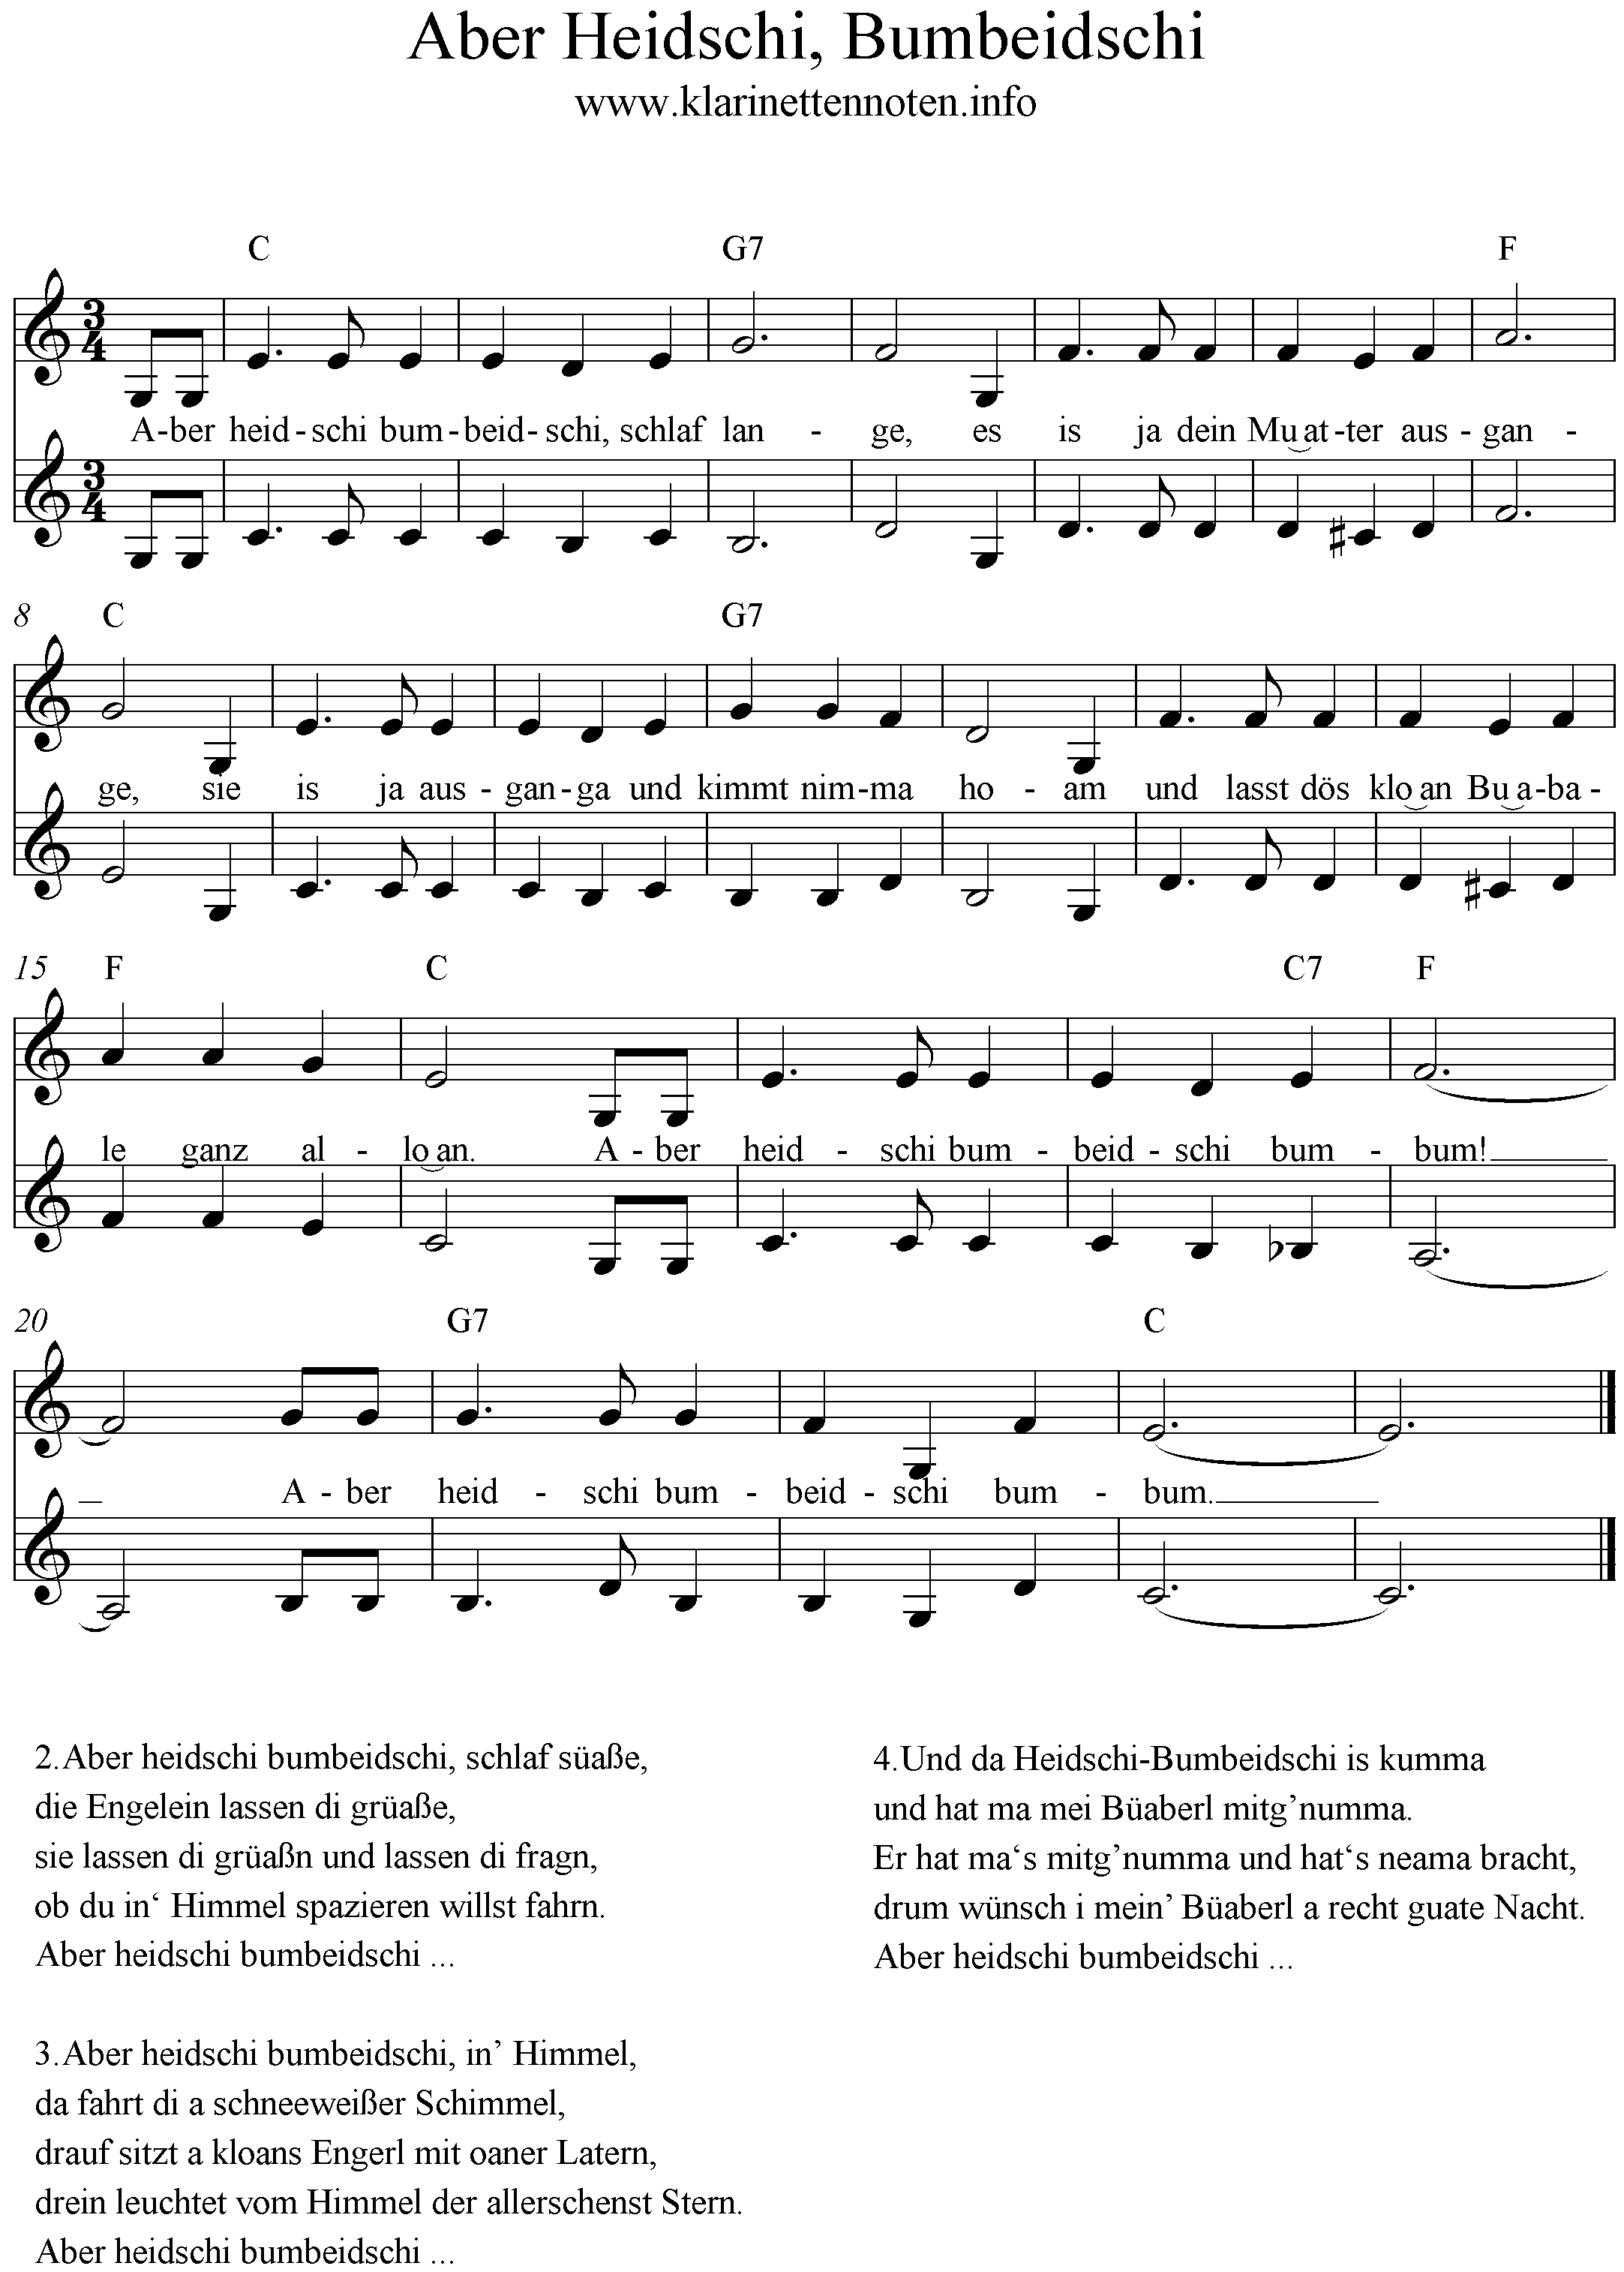 Heidschi Bumbeidschi Noten für Klarinette Anfänger